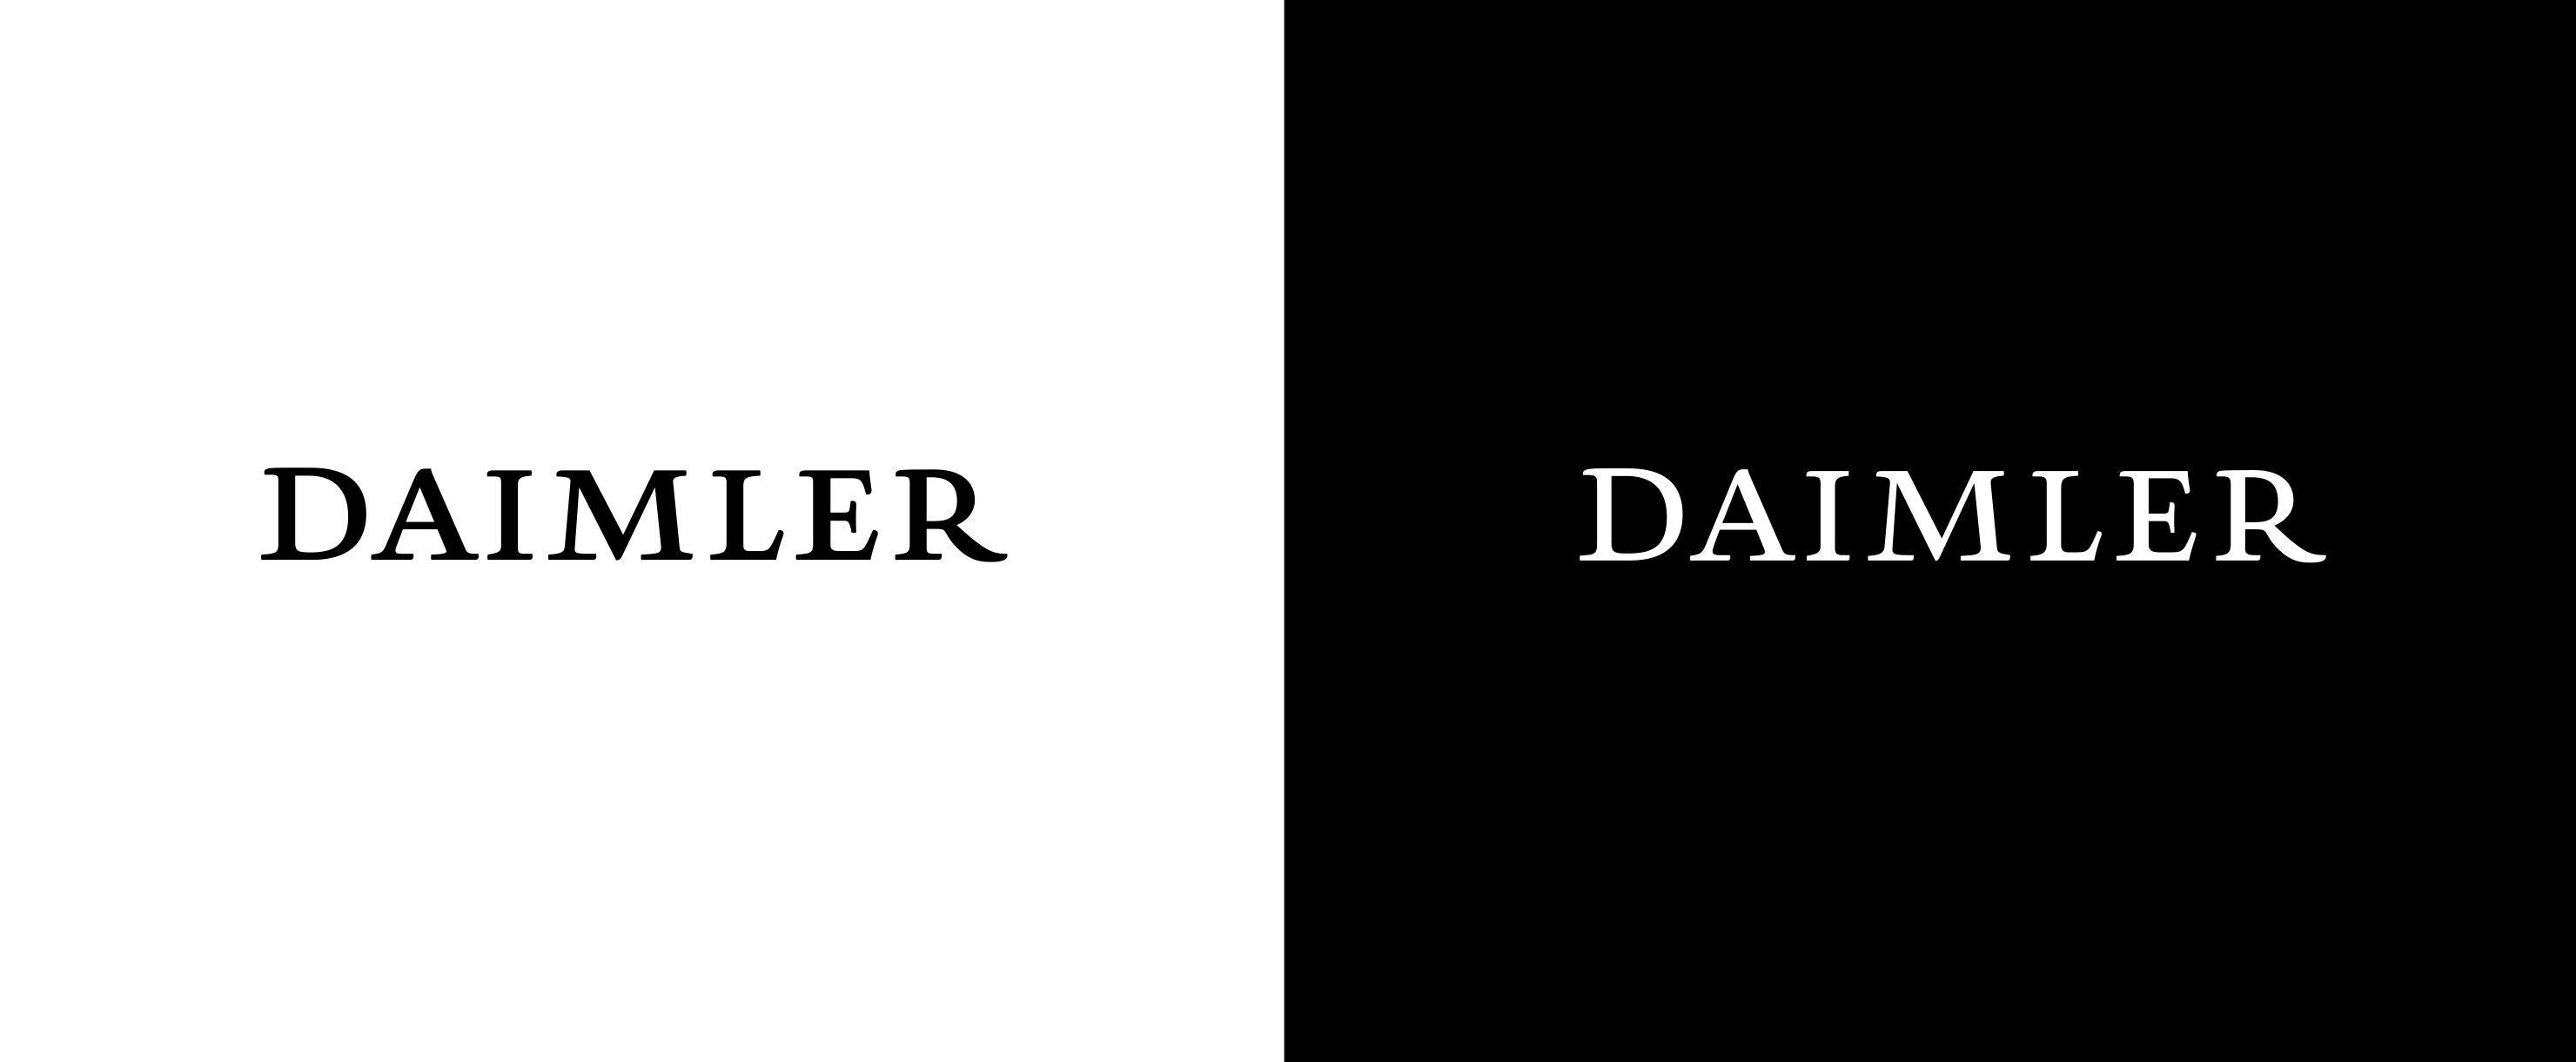 Daimler -Benz Logo - Daimler Brand & Design Navigator